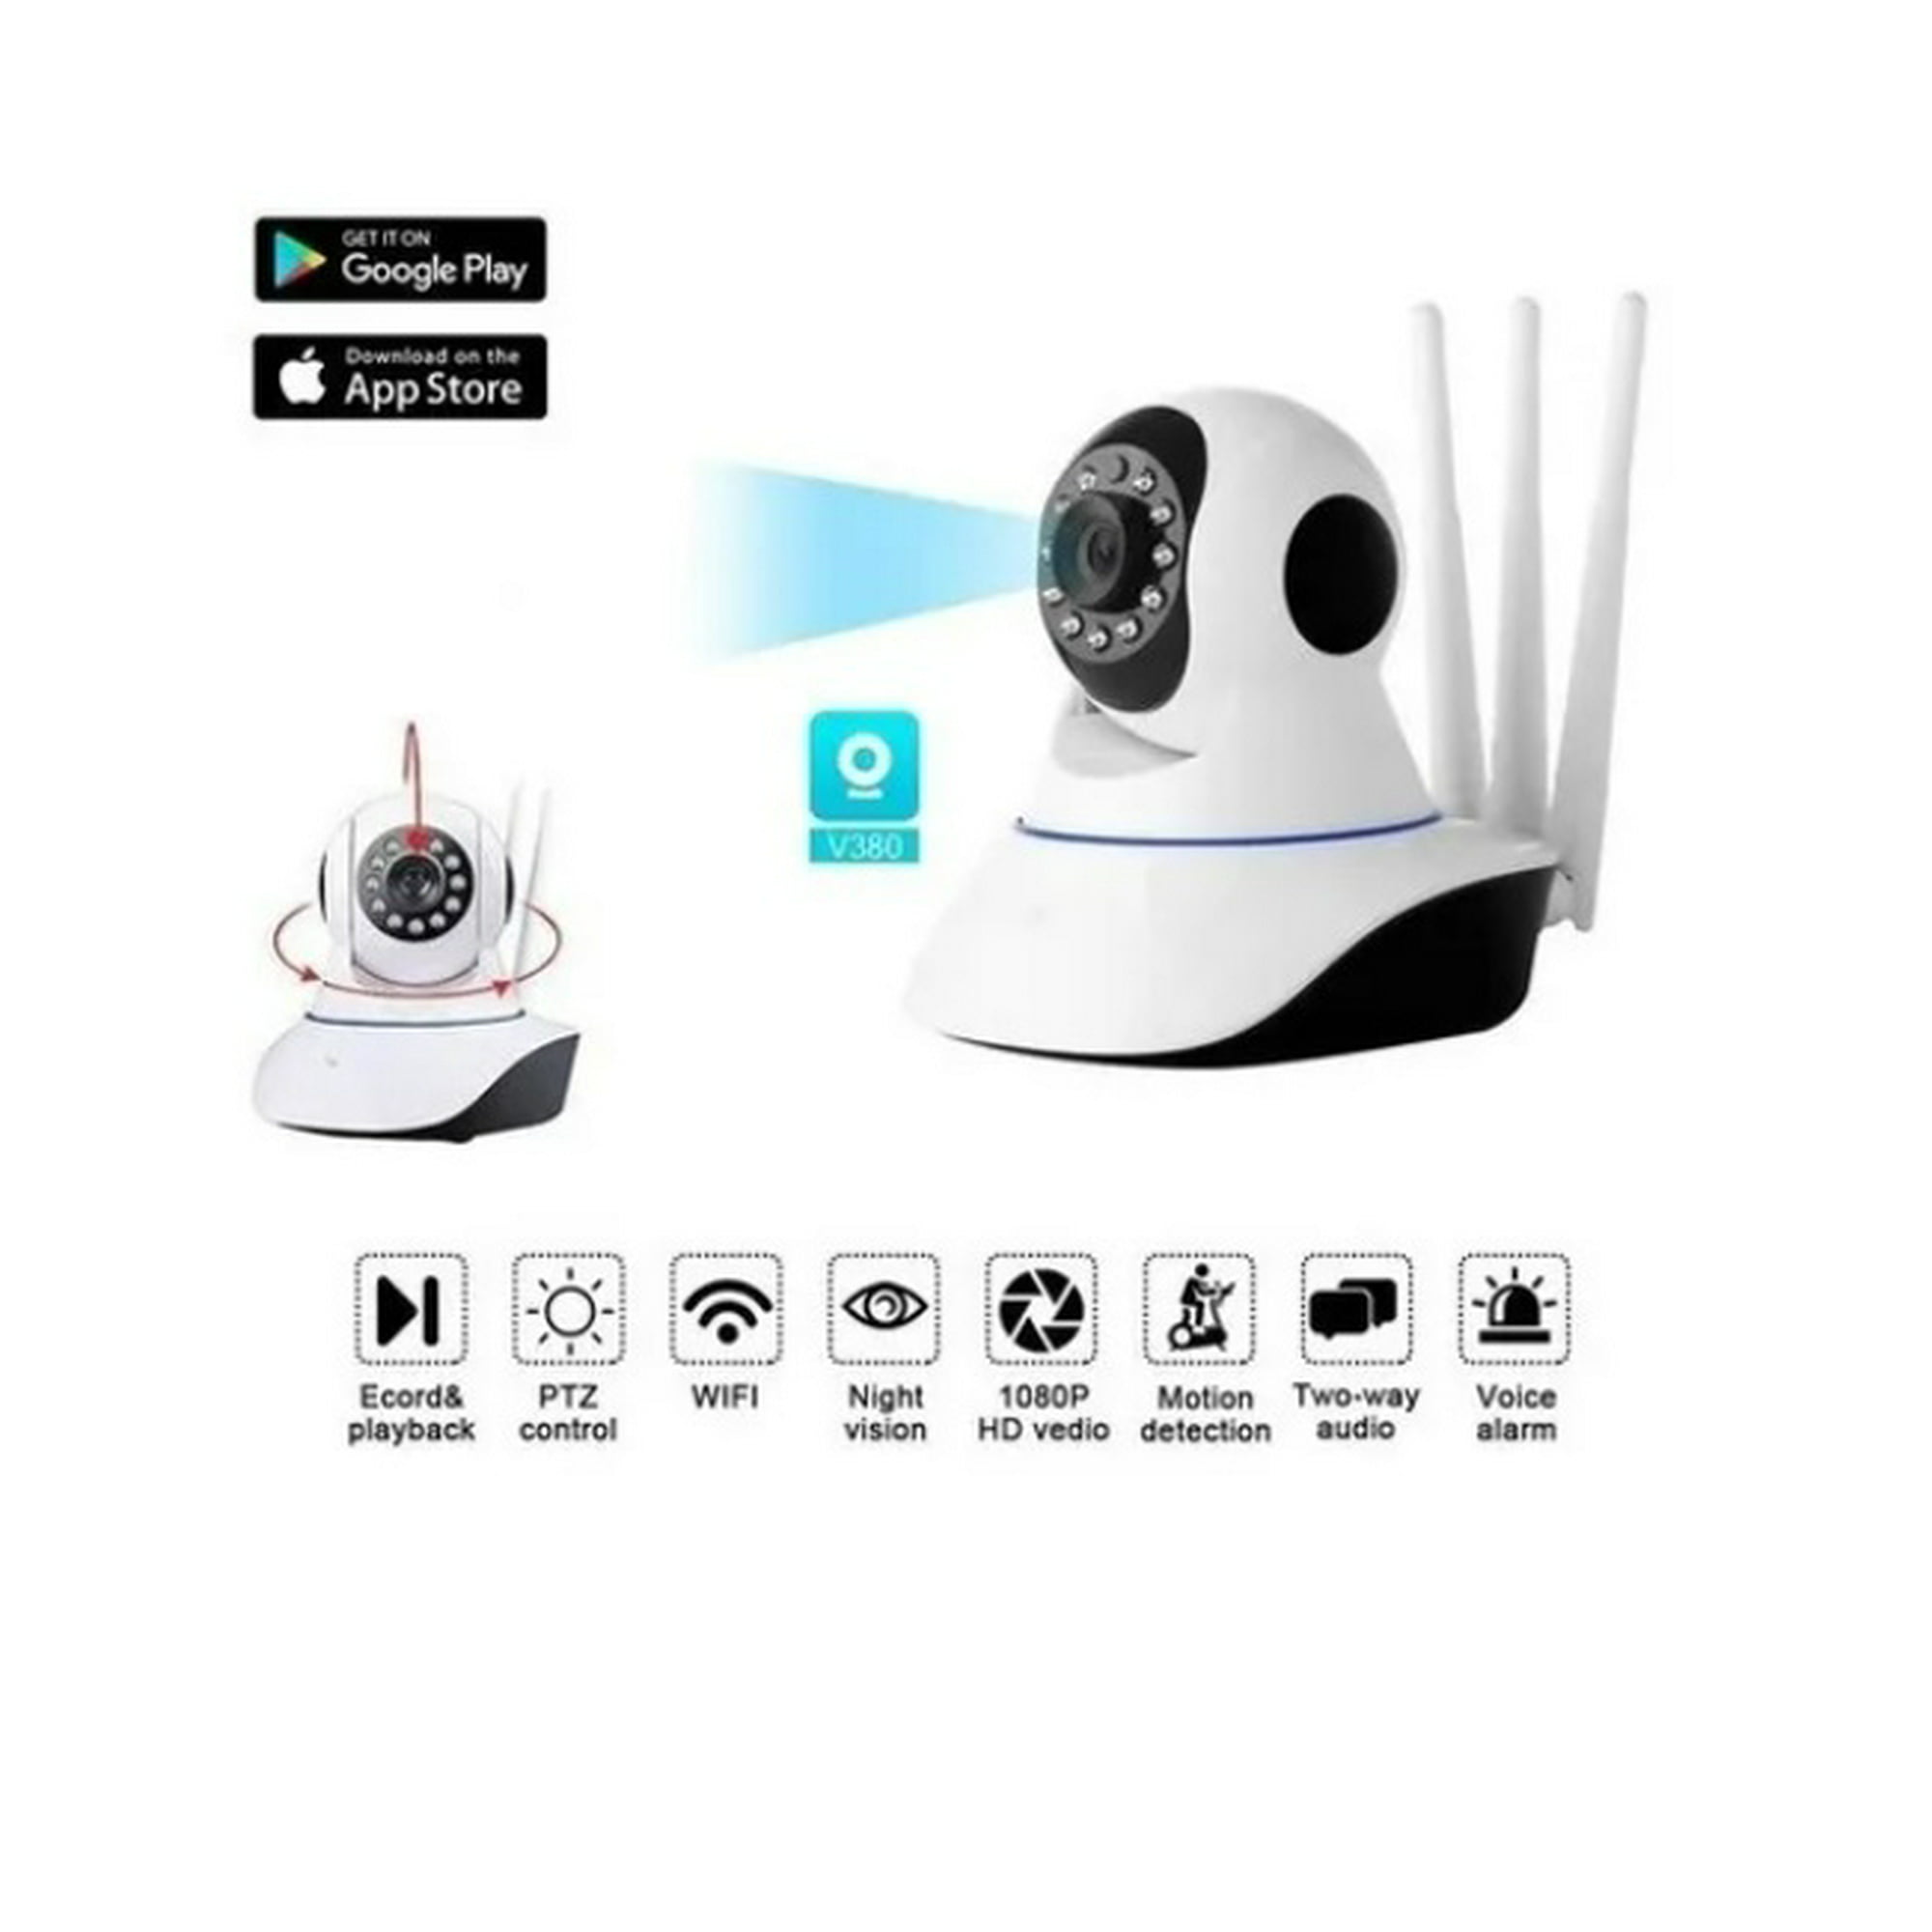 Mini cámara de vigilancia para teléfono celular cámara inalámbrica 1080p cámara  espía ACTIVE Biensenido a ACTIVE